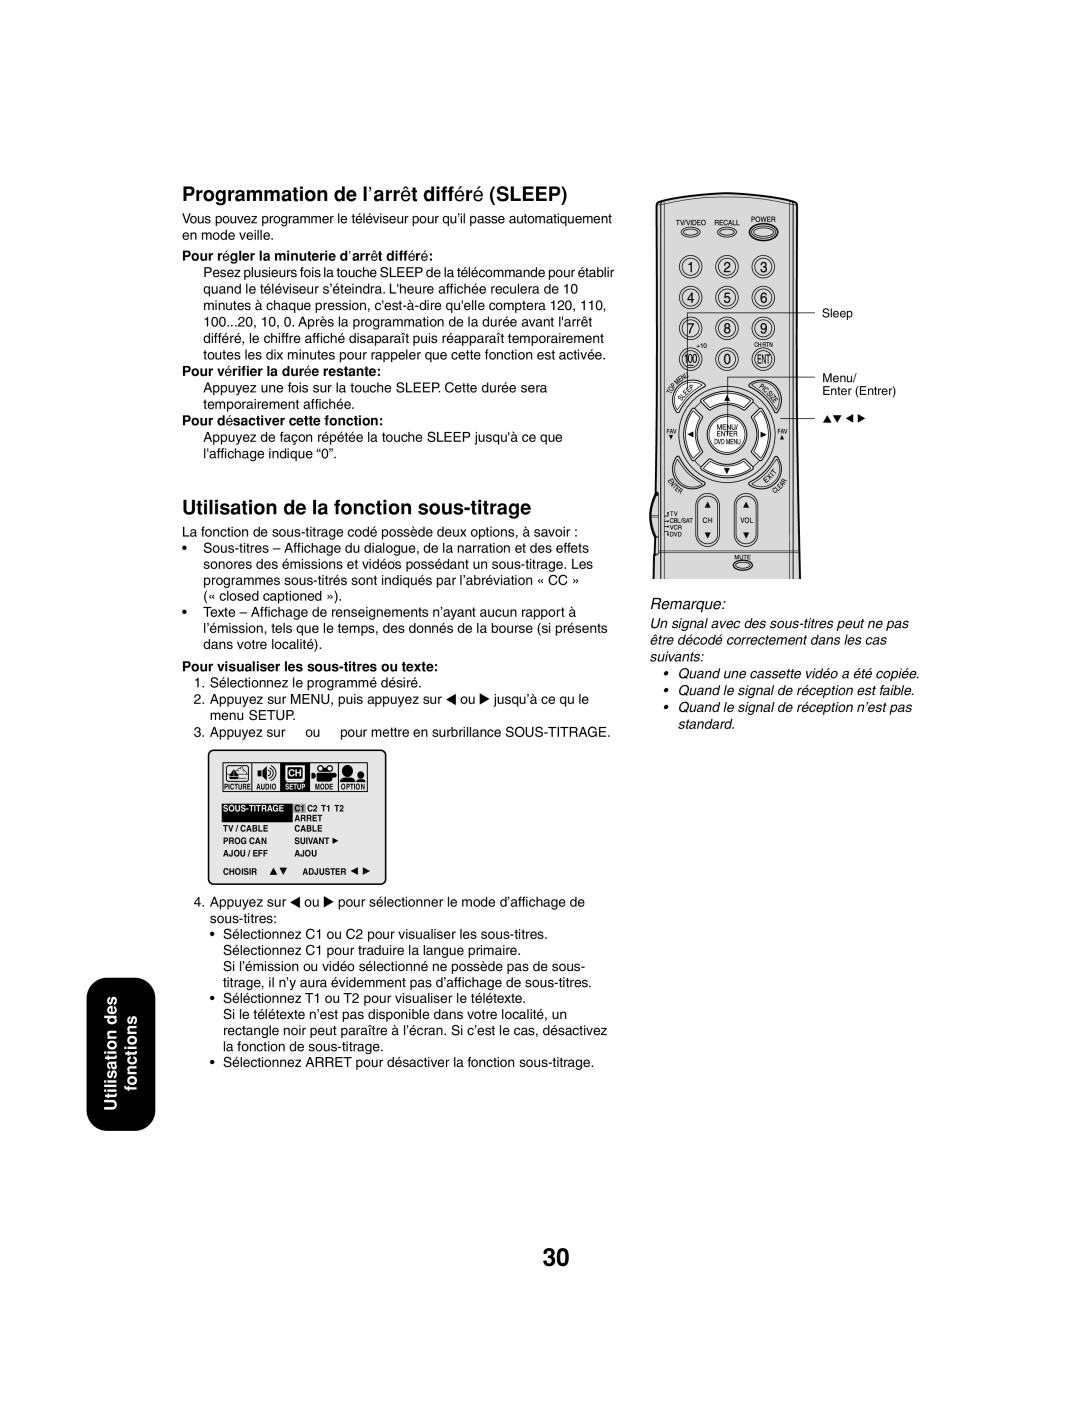 Toshiba 27AF53 appendix Programmation de l’arrêt différé Sleep, Utilisation de la fonction sous-titrage 